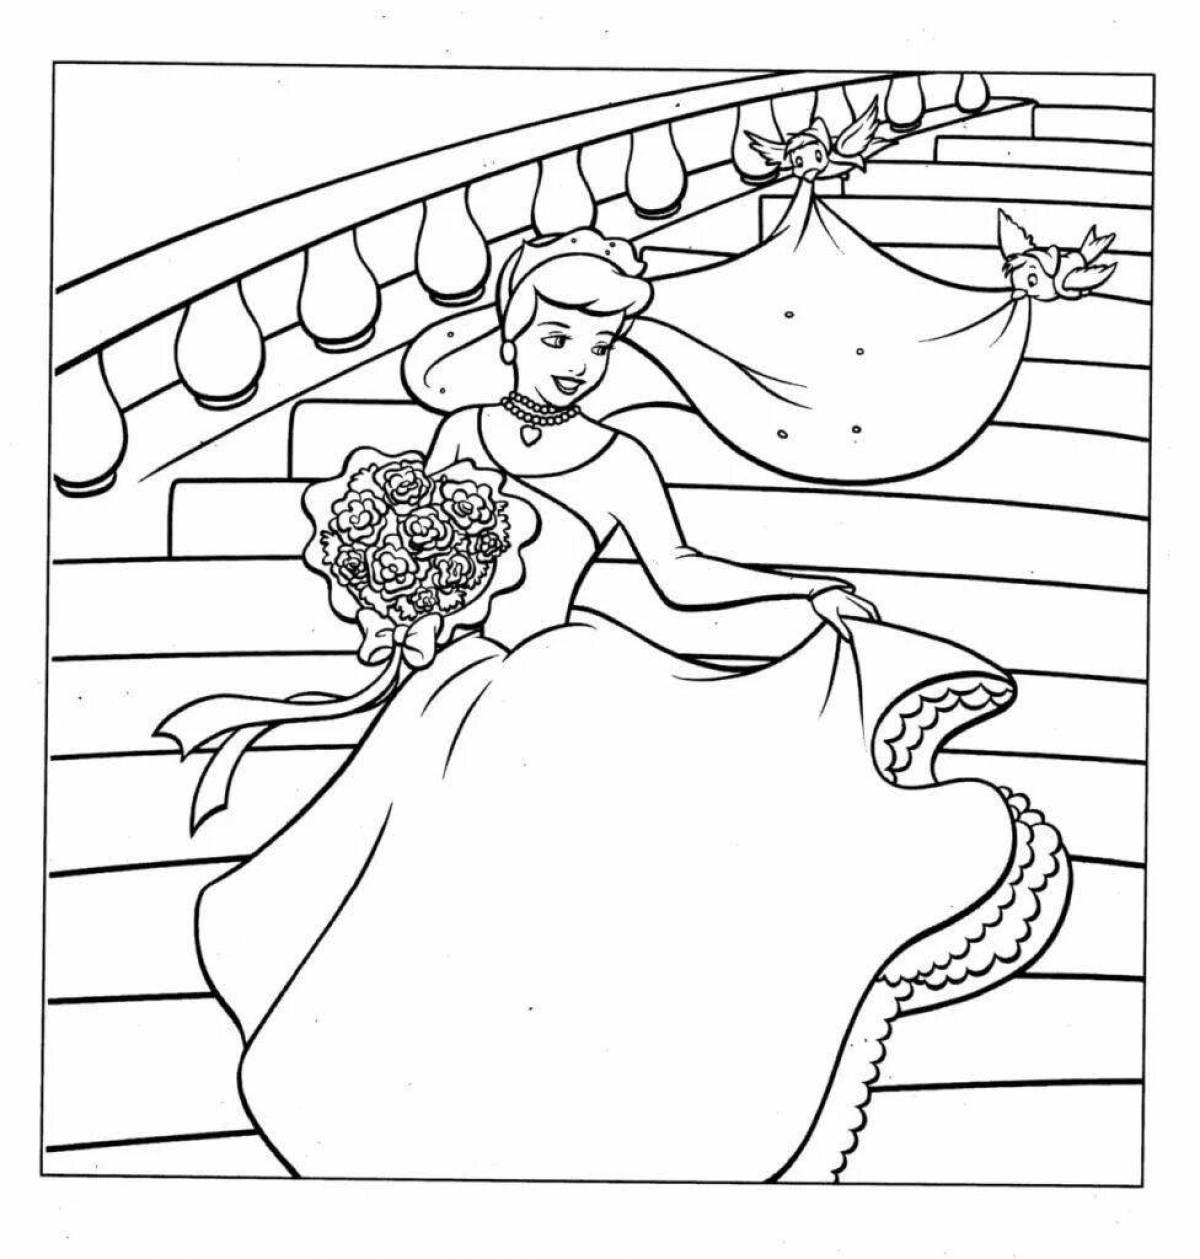 Charming Cinderella coloring book